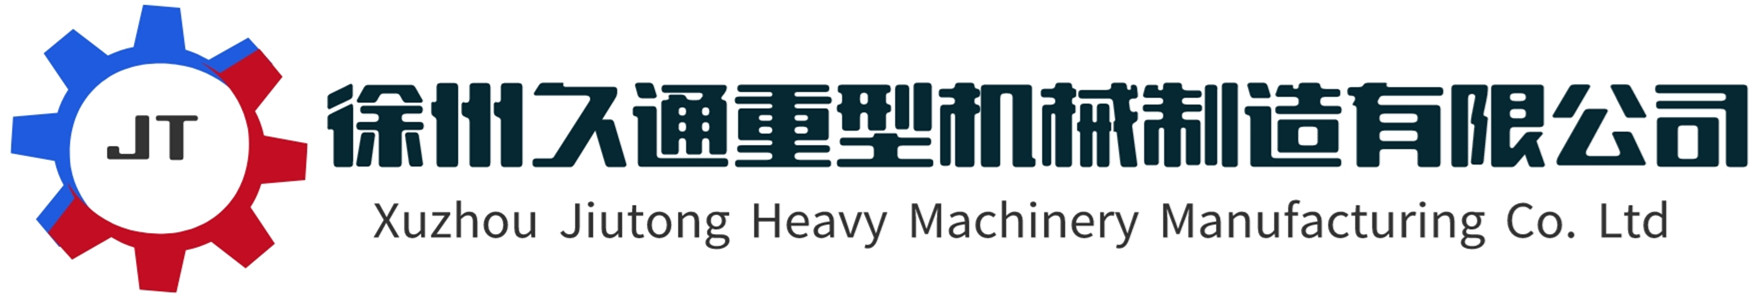 徐州久通重型機械制造有限公司